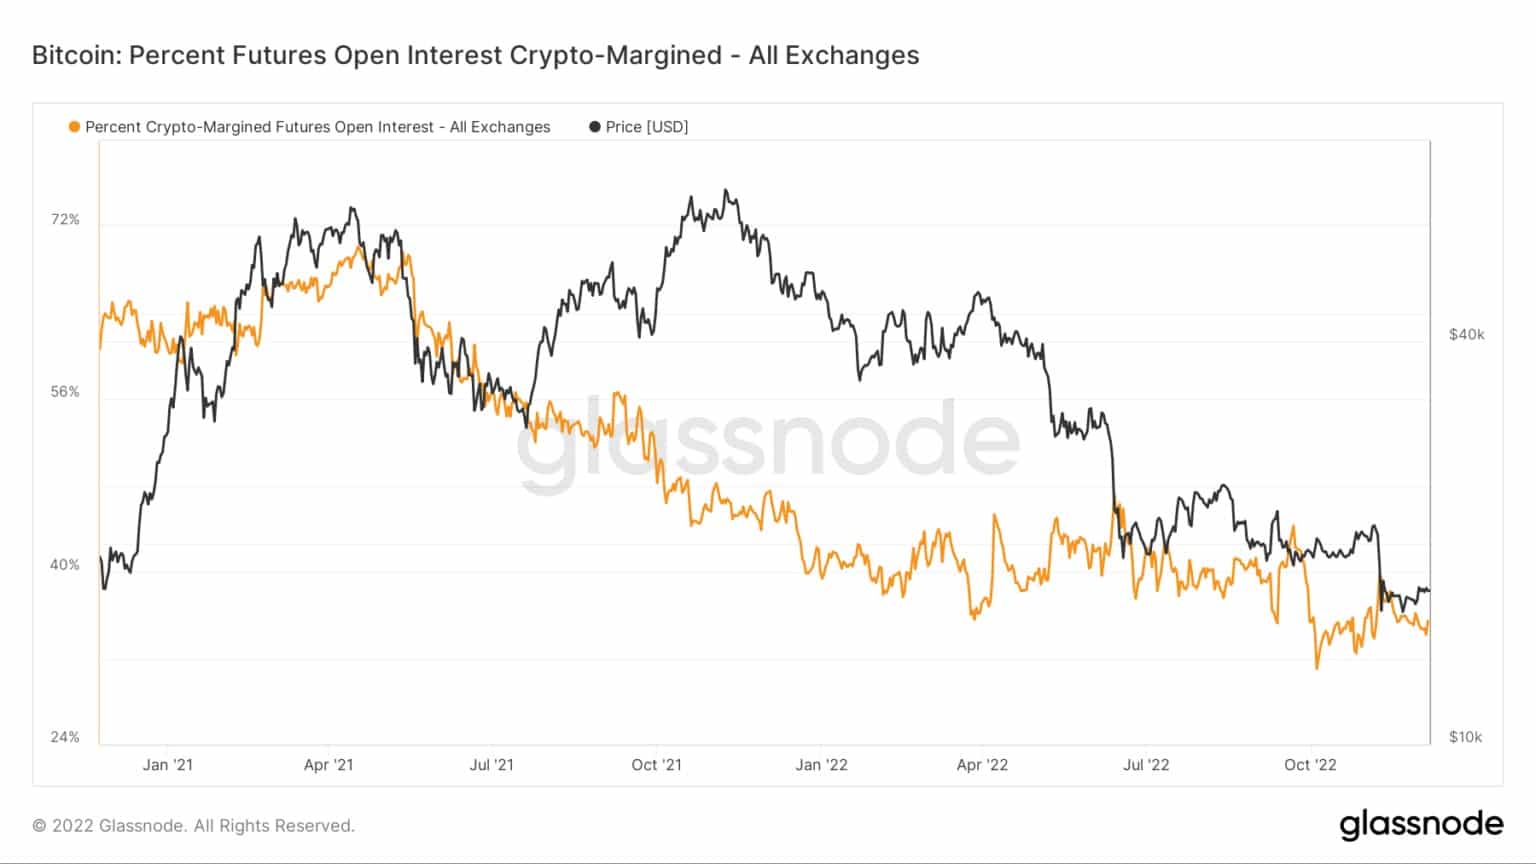 Graphique montrant le pourcentage d'intérêt ouvert des contrats à terme Bitcoin cryptés de juin 2021 à décembre 2022 (Source : Glassnode)